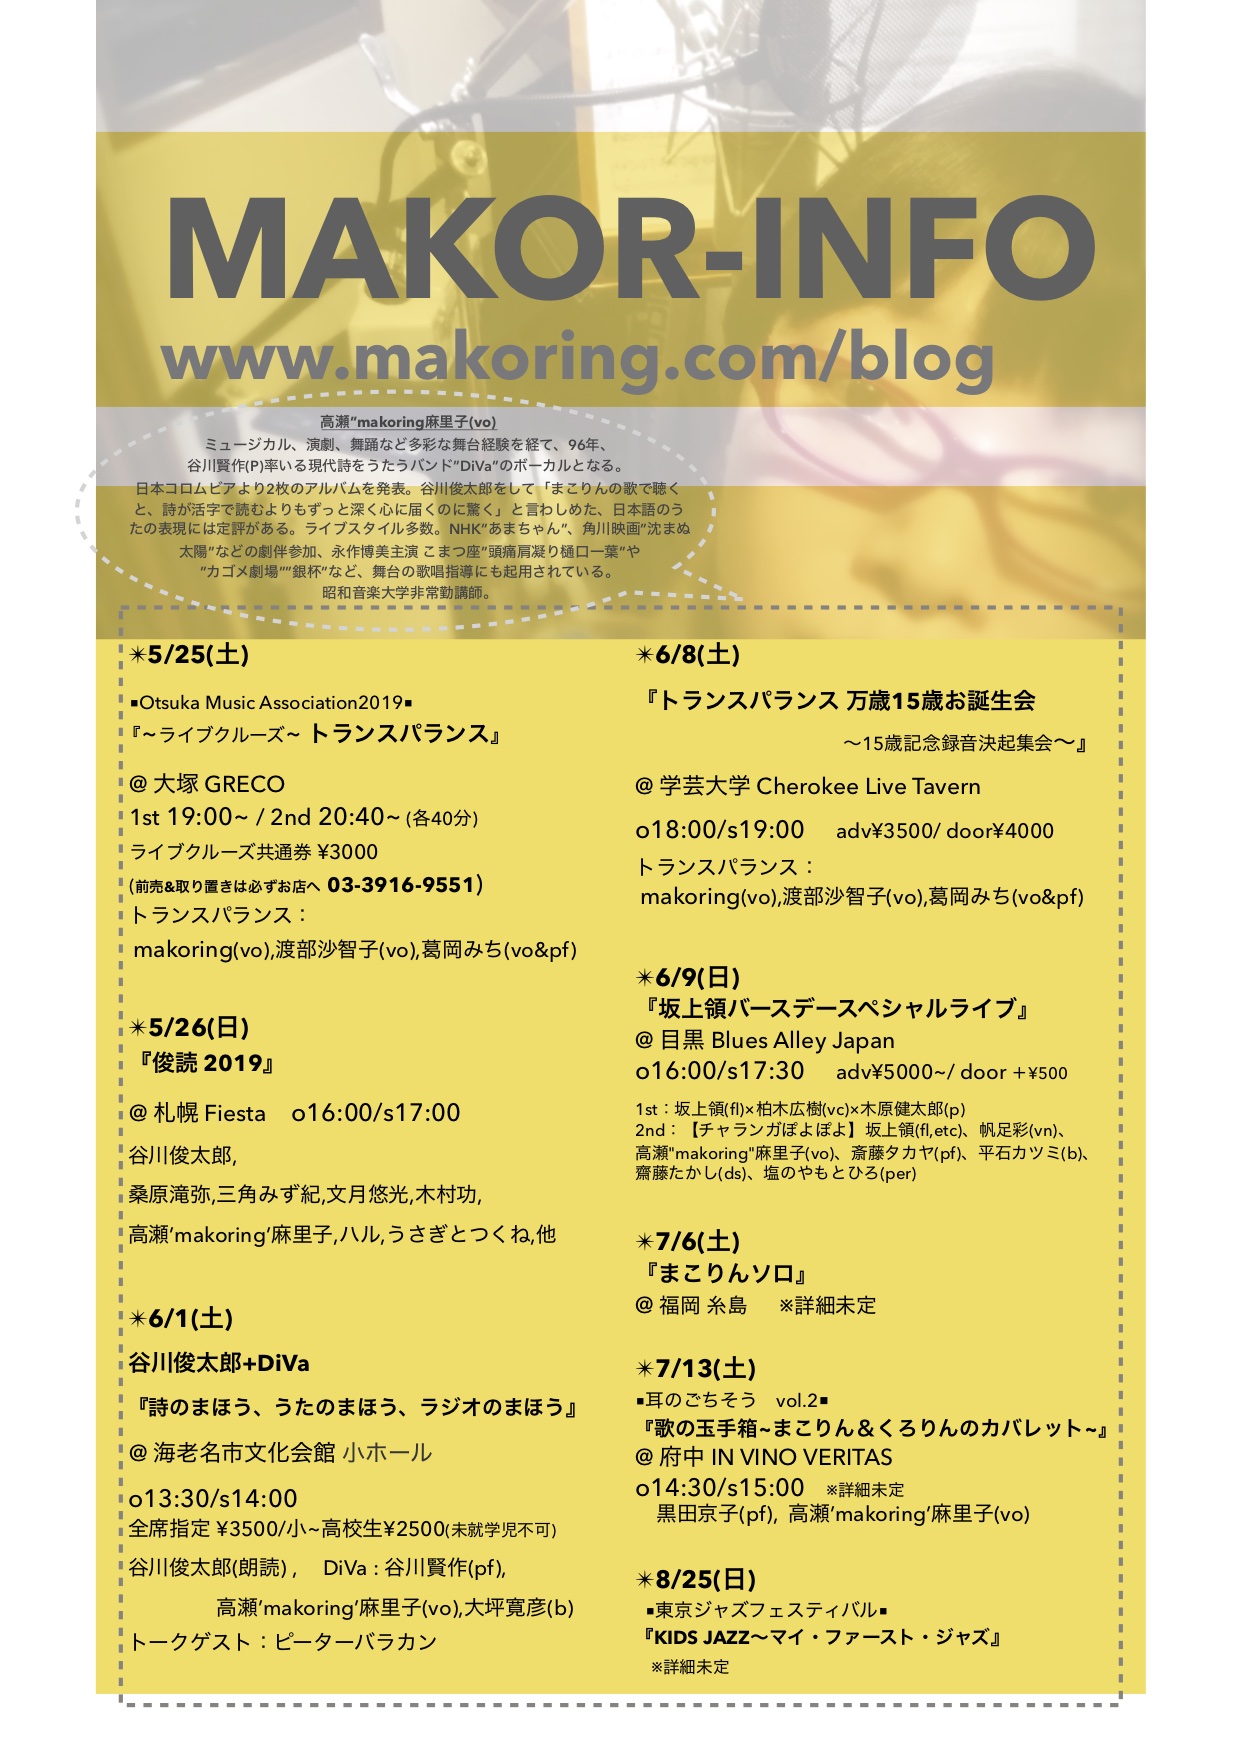 makoring.com: sche-che